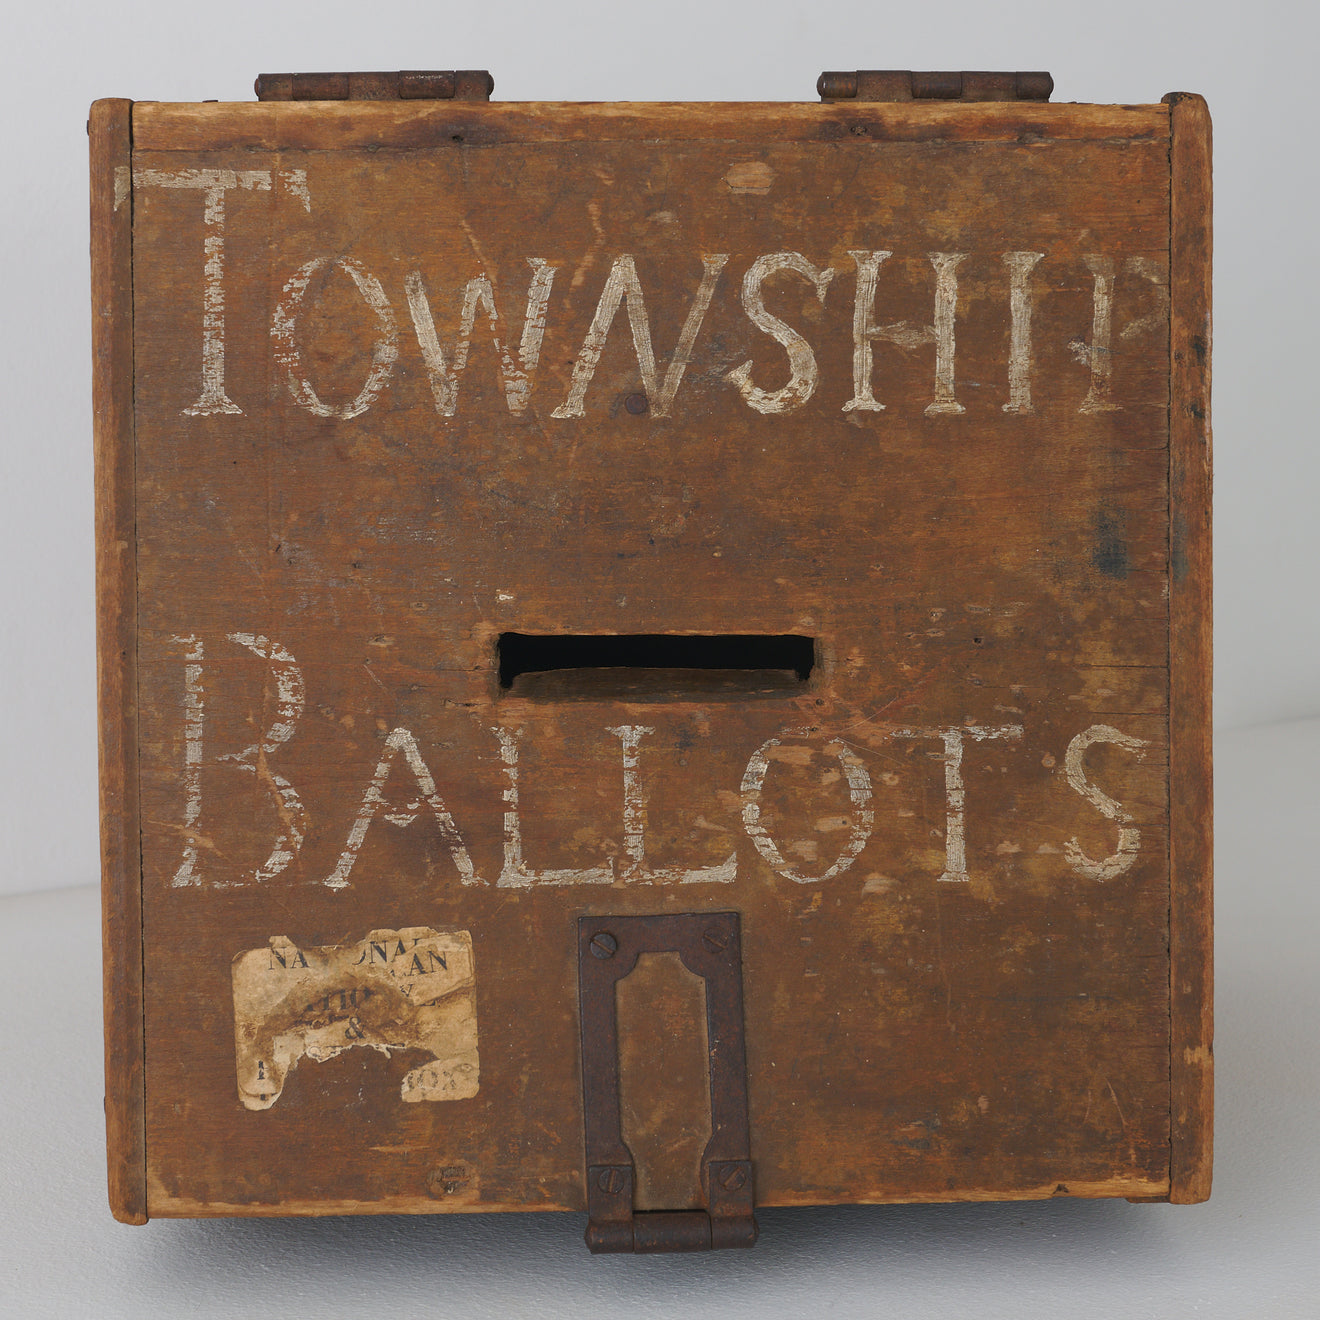 'TOWNSHIP BALLOTS' BOX